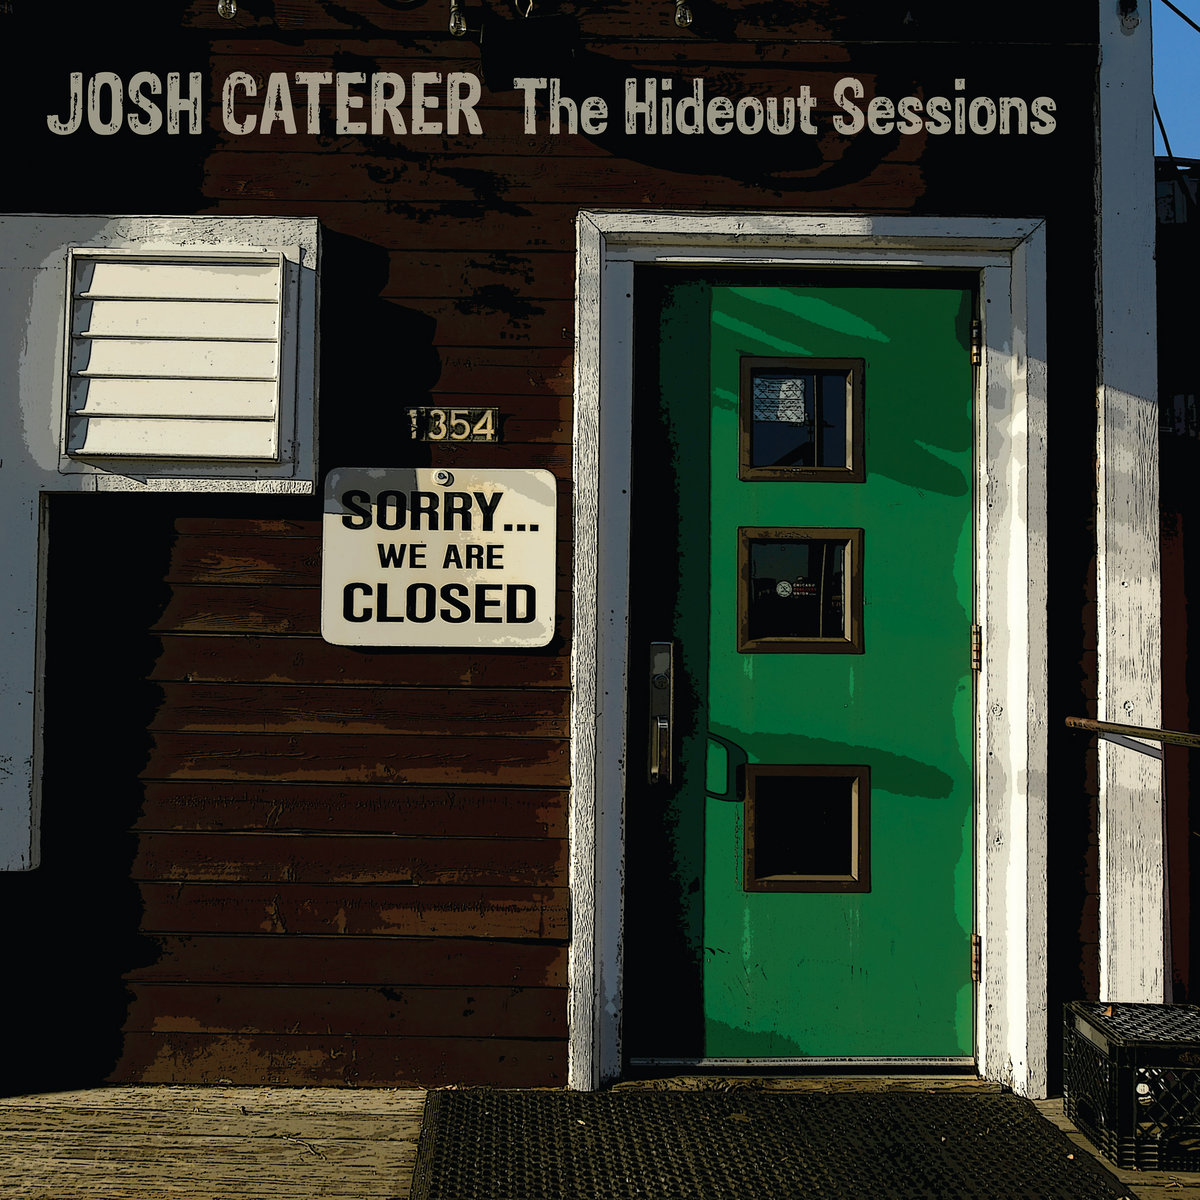 Josh Caterer